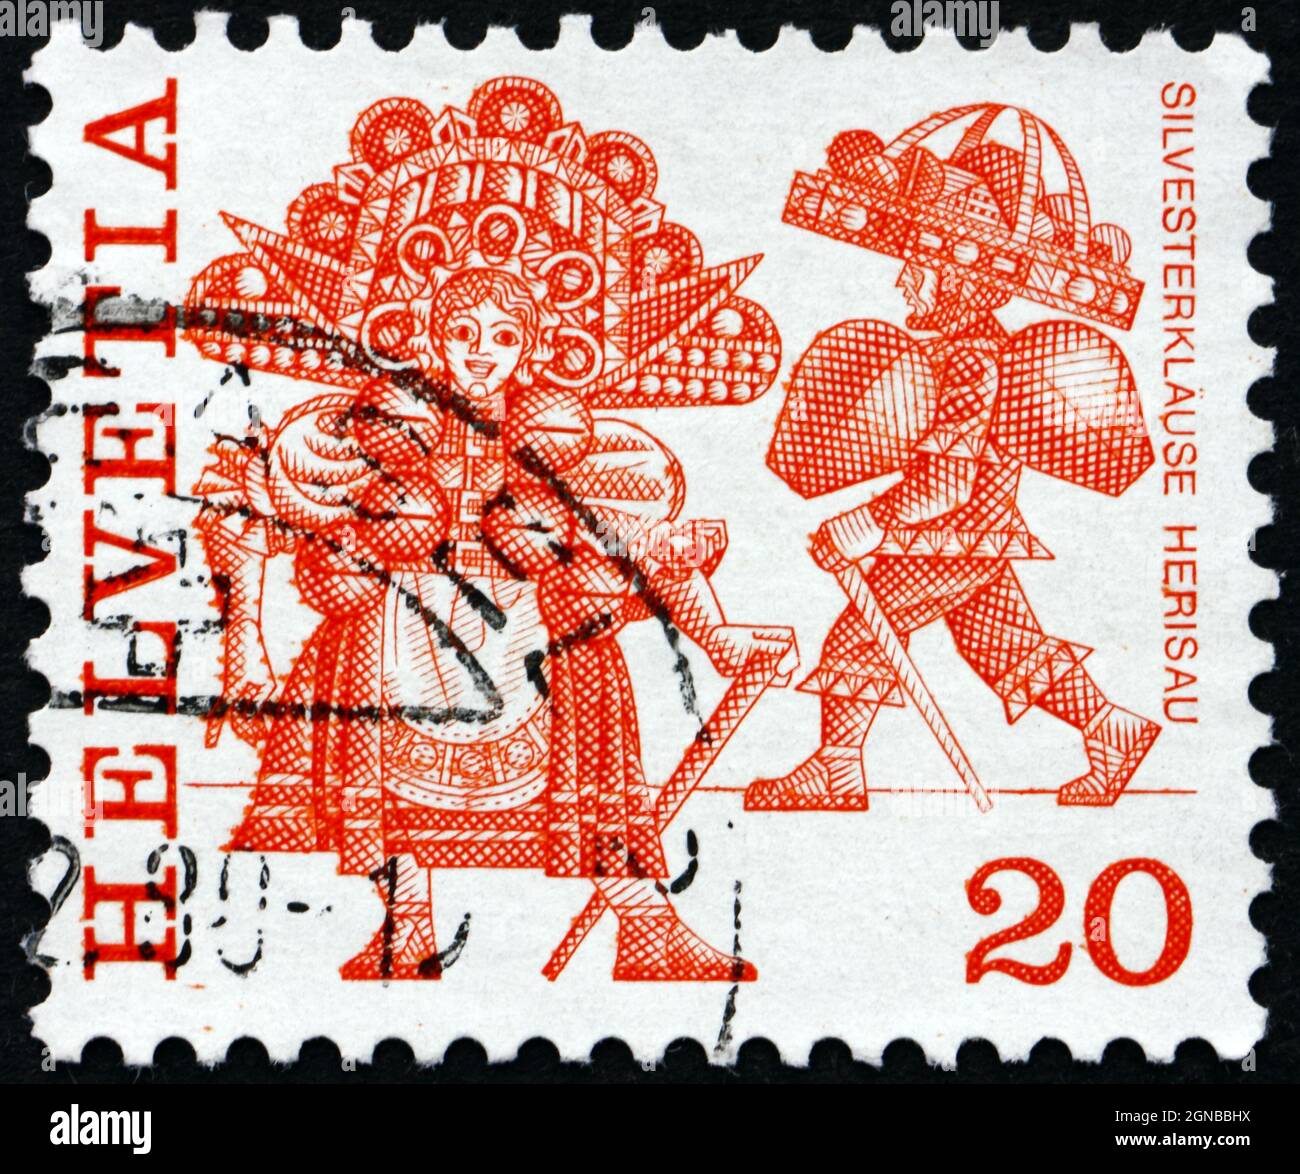 SUISSE - VERS 1977: Un timbre imprimé en Suisse montre les costumes de la Saint-Sylvestre, Herisau, Folk Customs, vers 1977 Banque D'Images